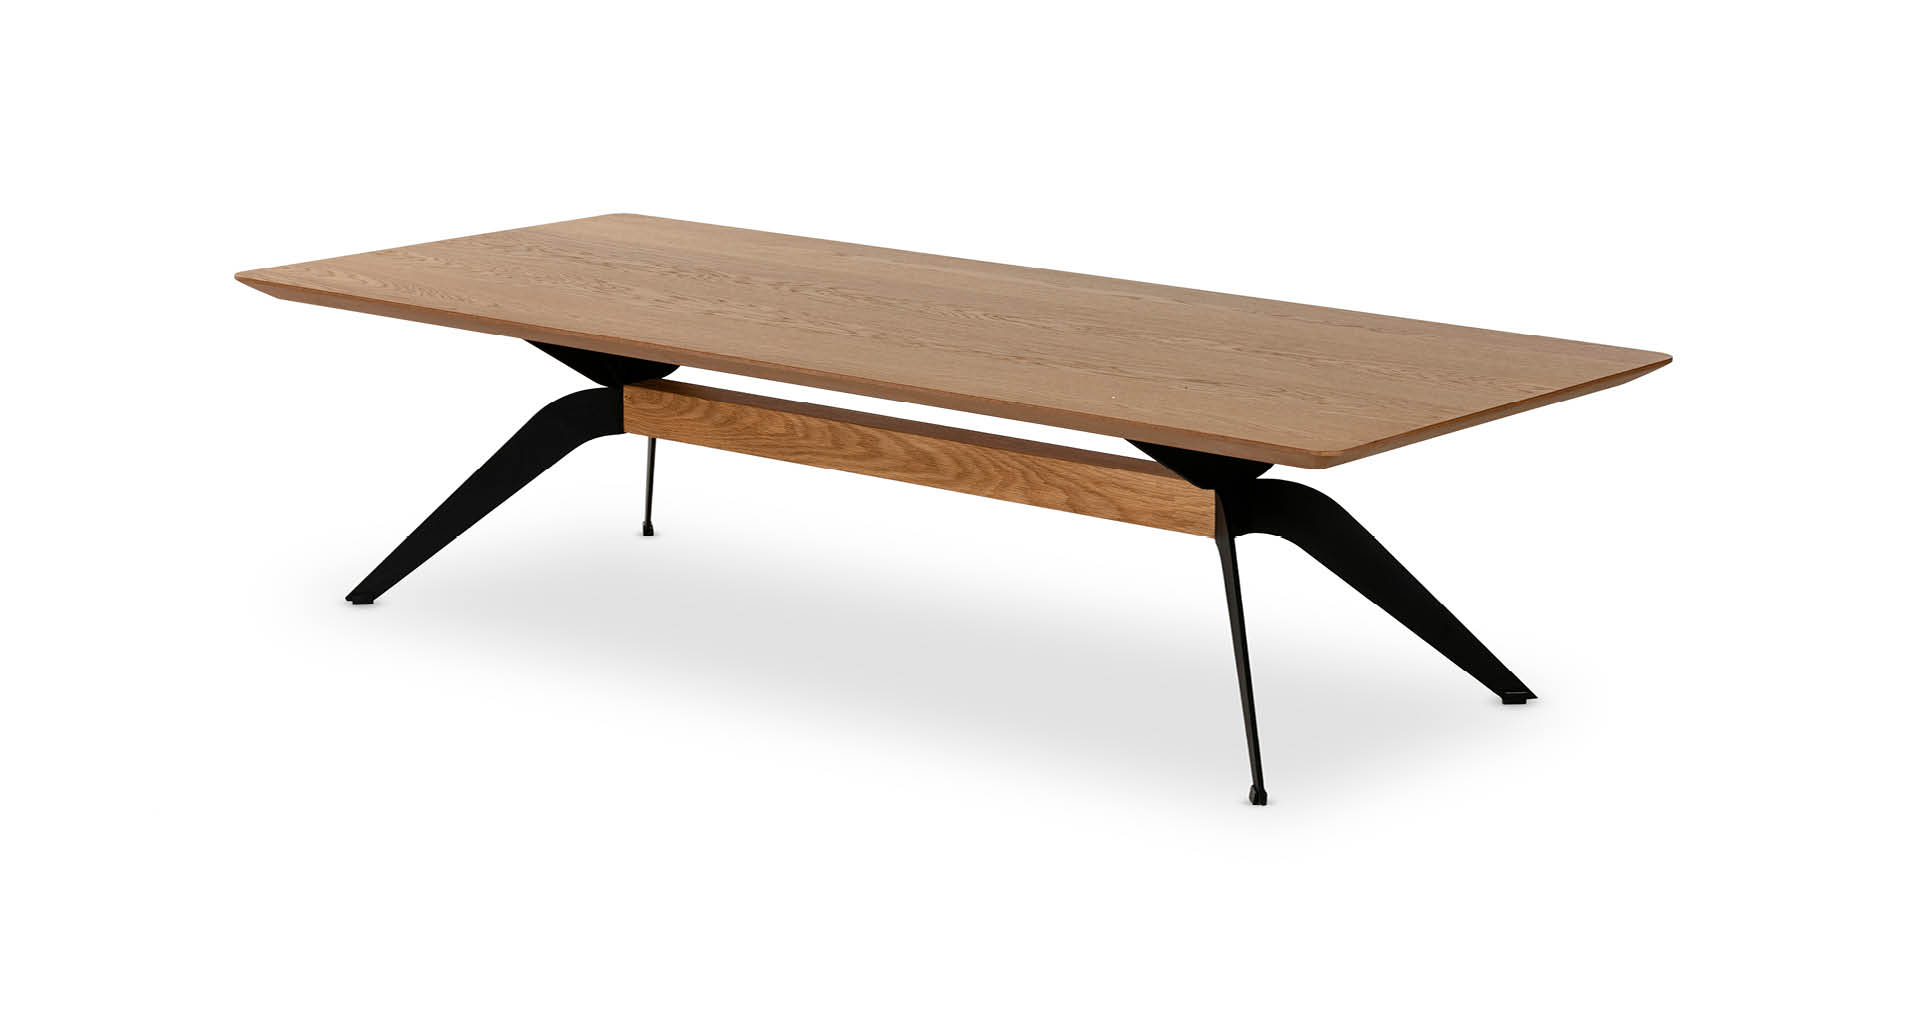 שולחן סלון אוסקר 160 ס"מ בגוון אלון טבעי